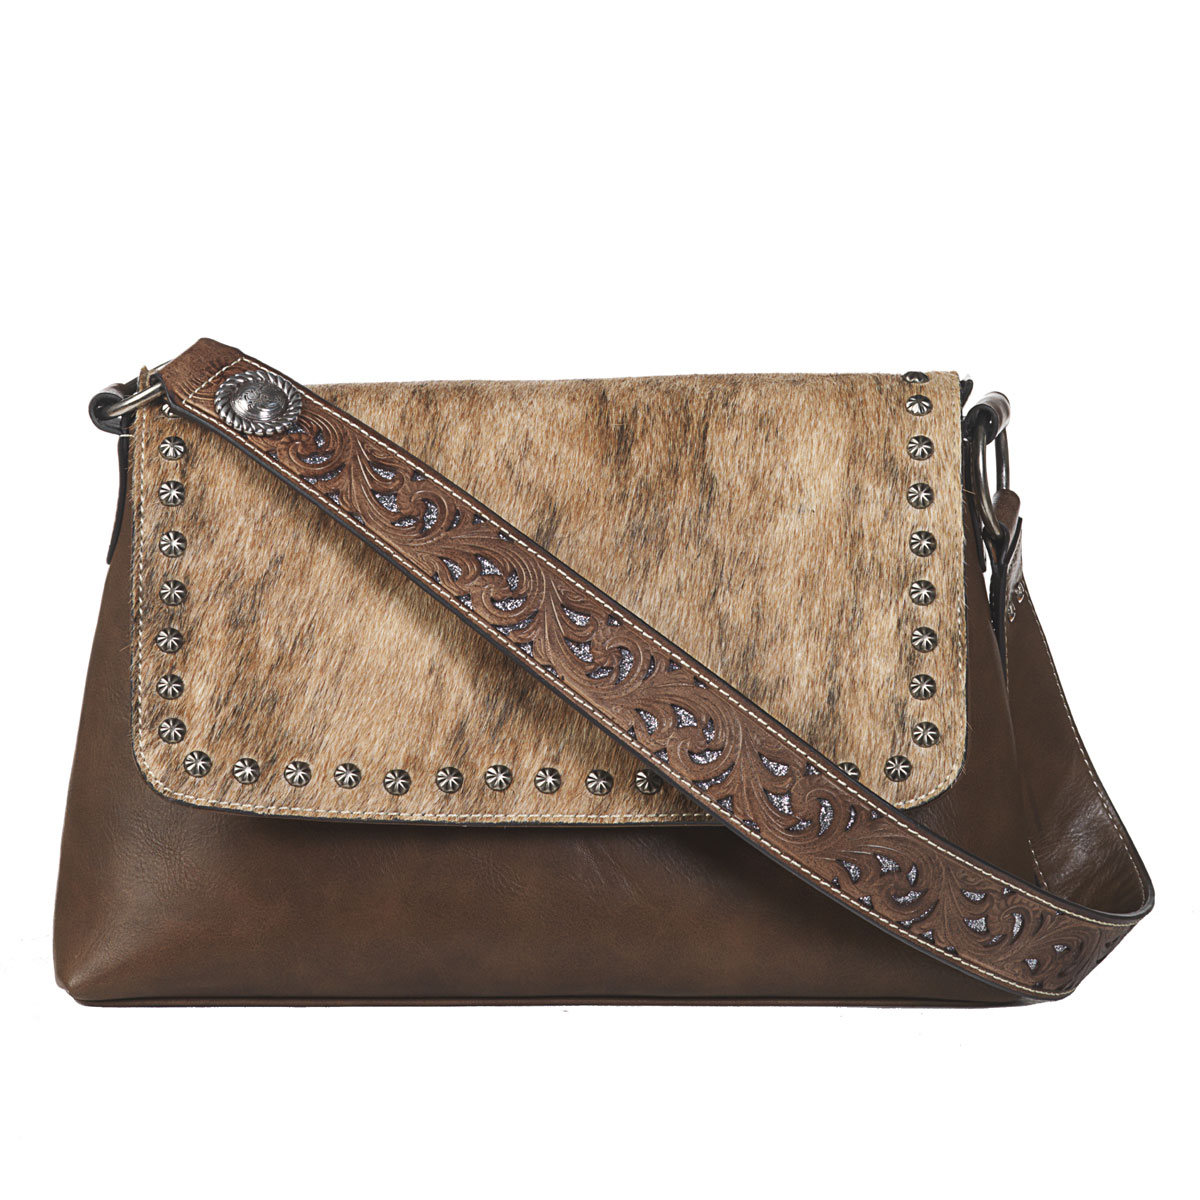 N770002002 Lynlee Style Shoulder Bag, Brown - 14 X 8.25 X 3.50 In.